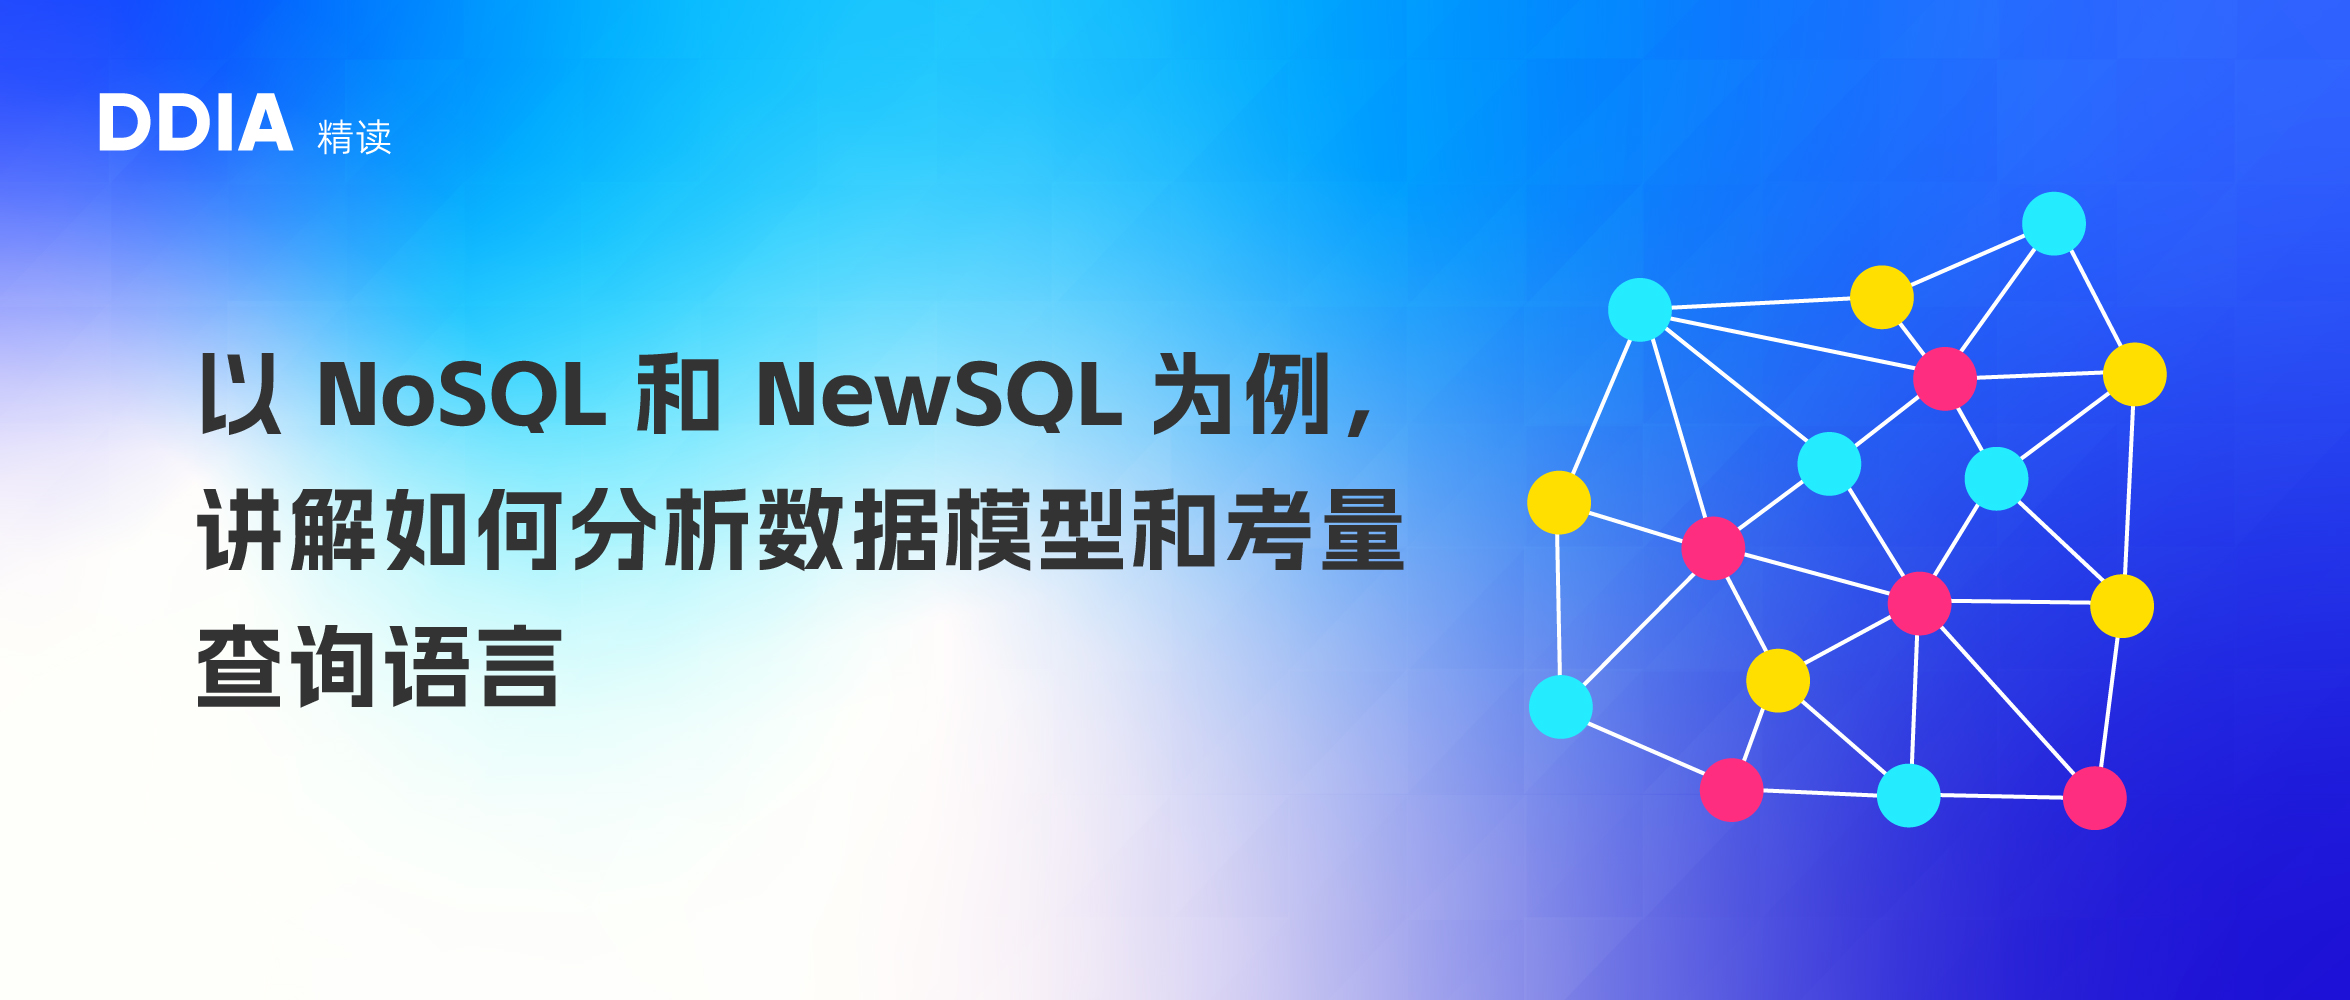 SQL、NewSQL、NoSQL 数据库的数据模型以及其查询语言